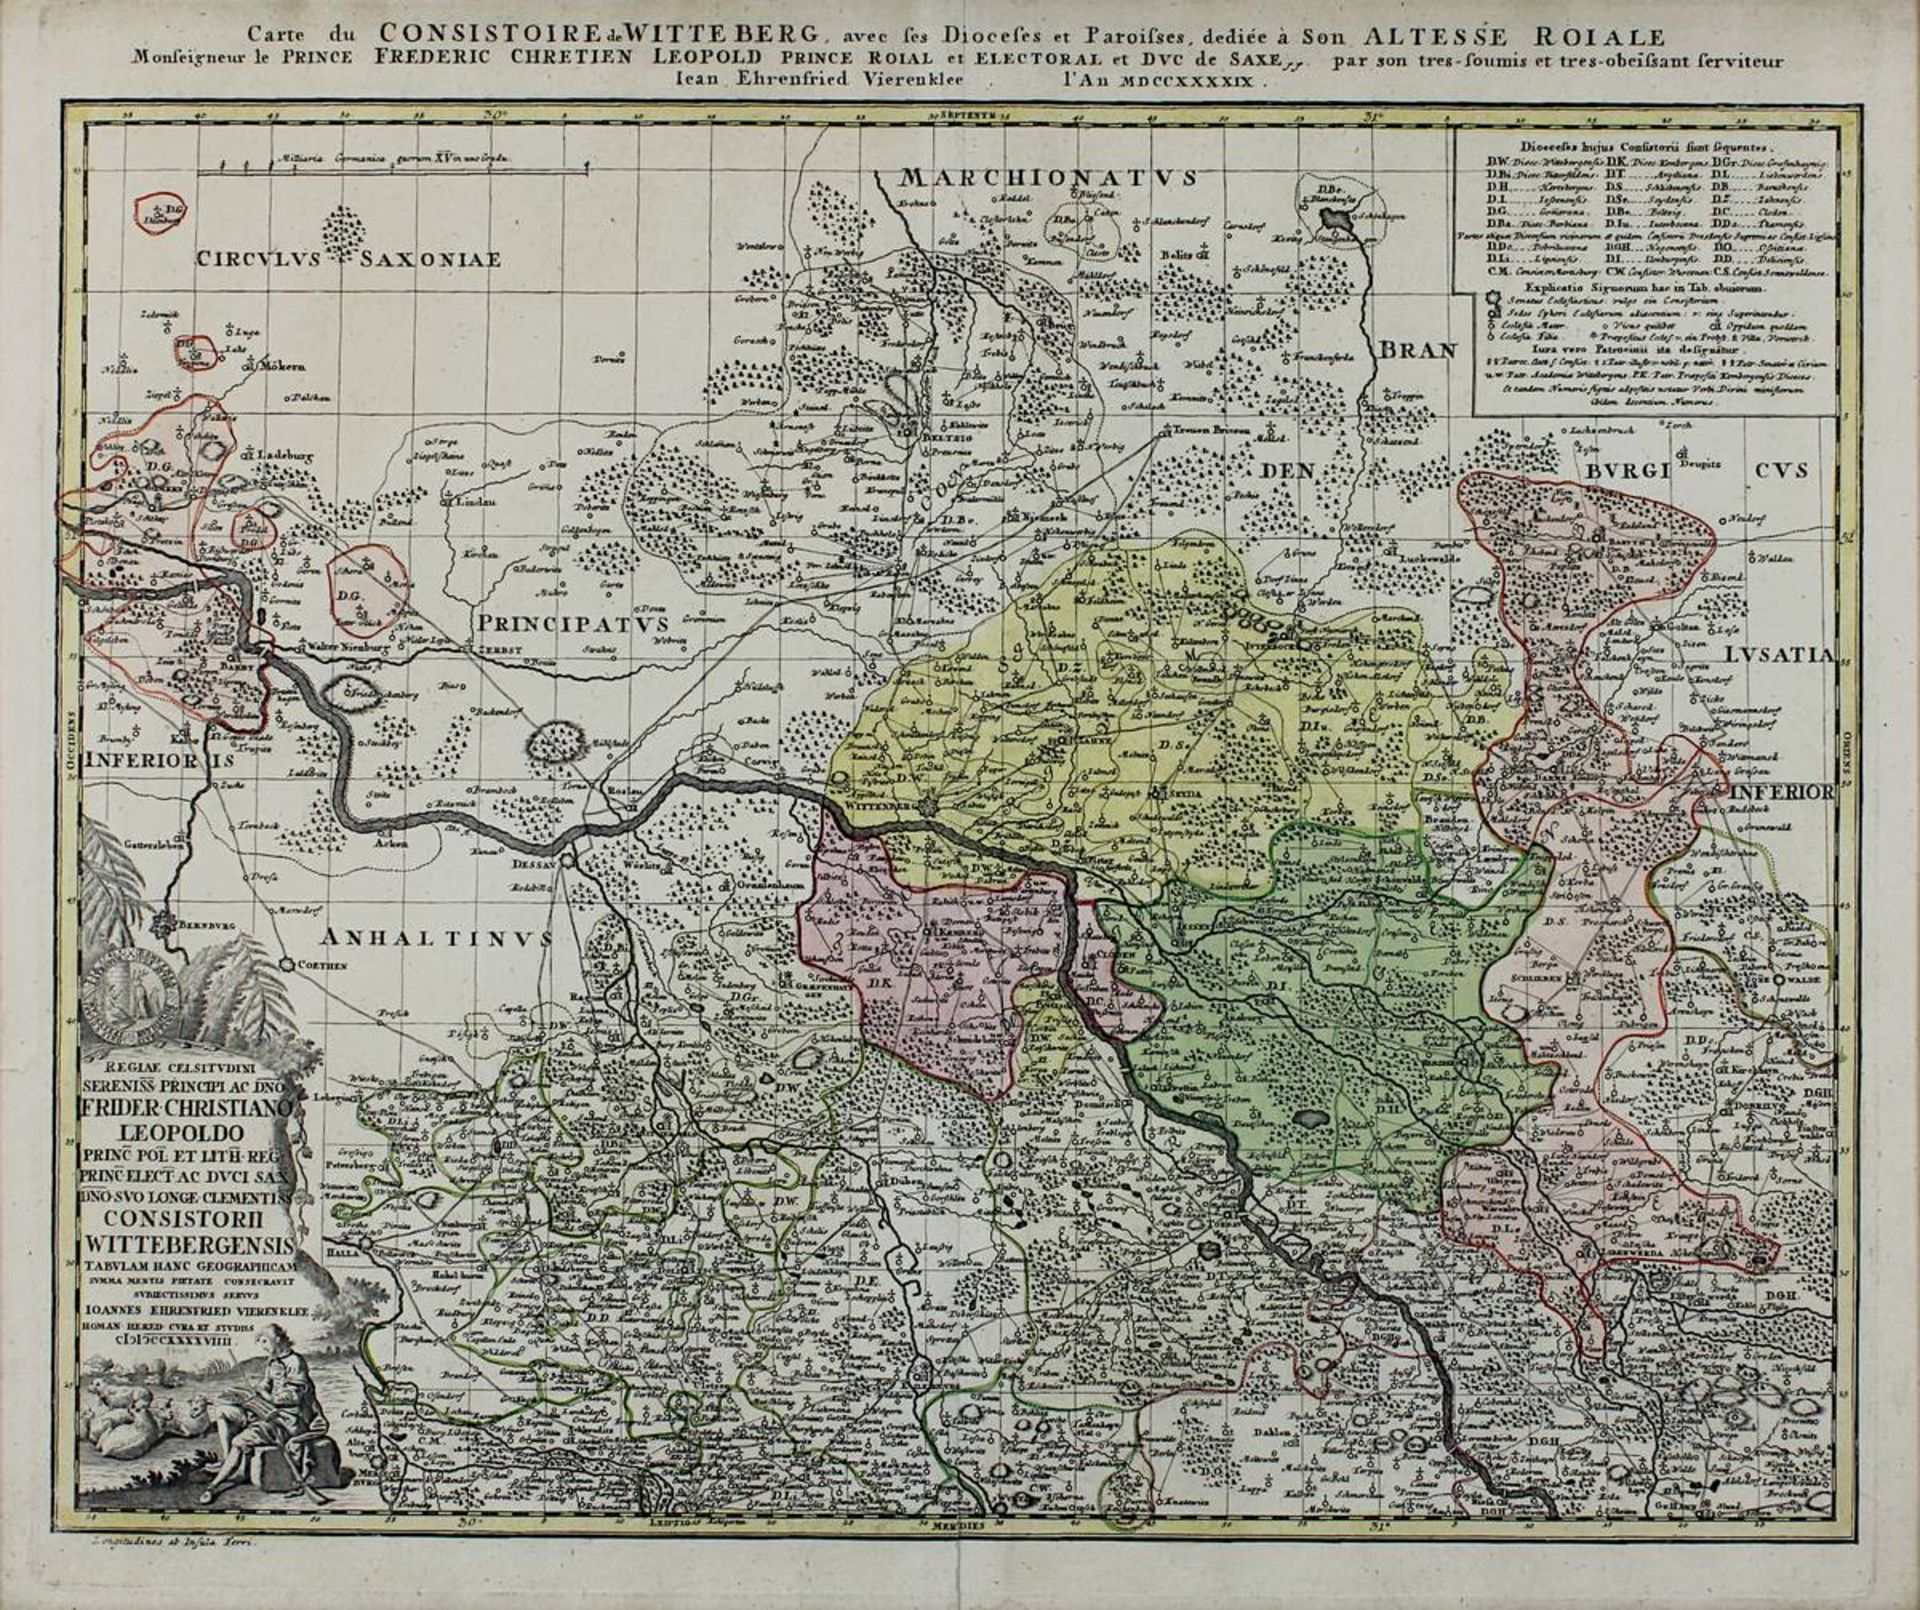 "Carte de Consistoire de Witteberg avec ses Dioceses et Paroisses ...", kolorierte - Bild 2 aus 2